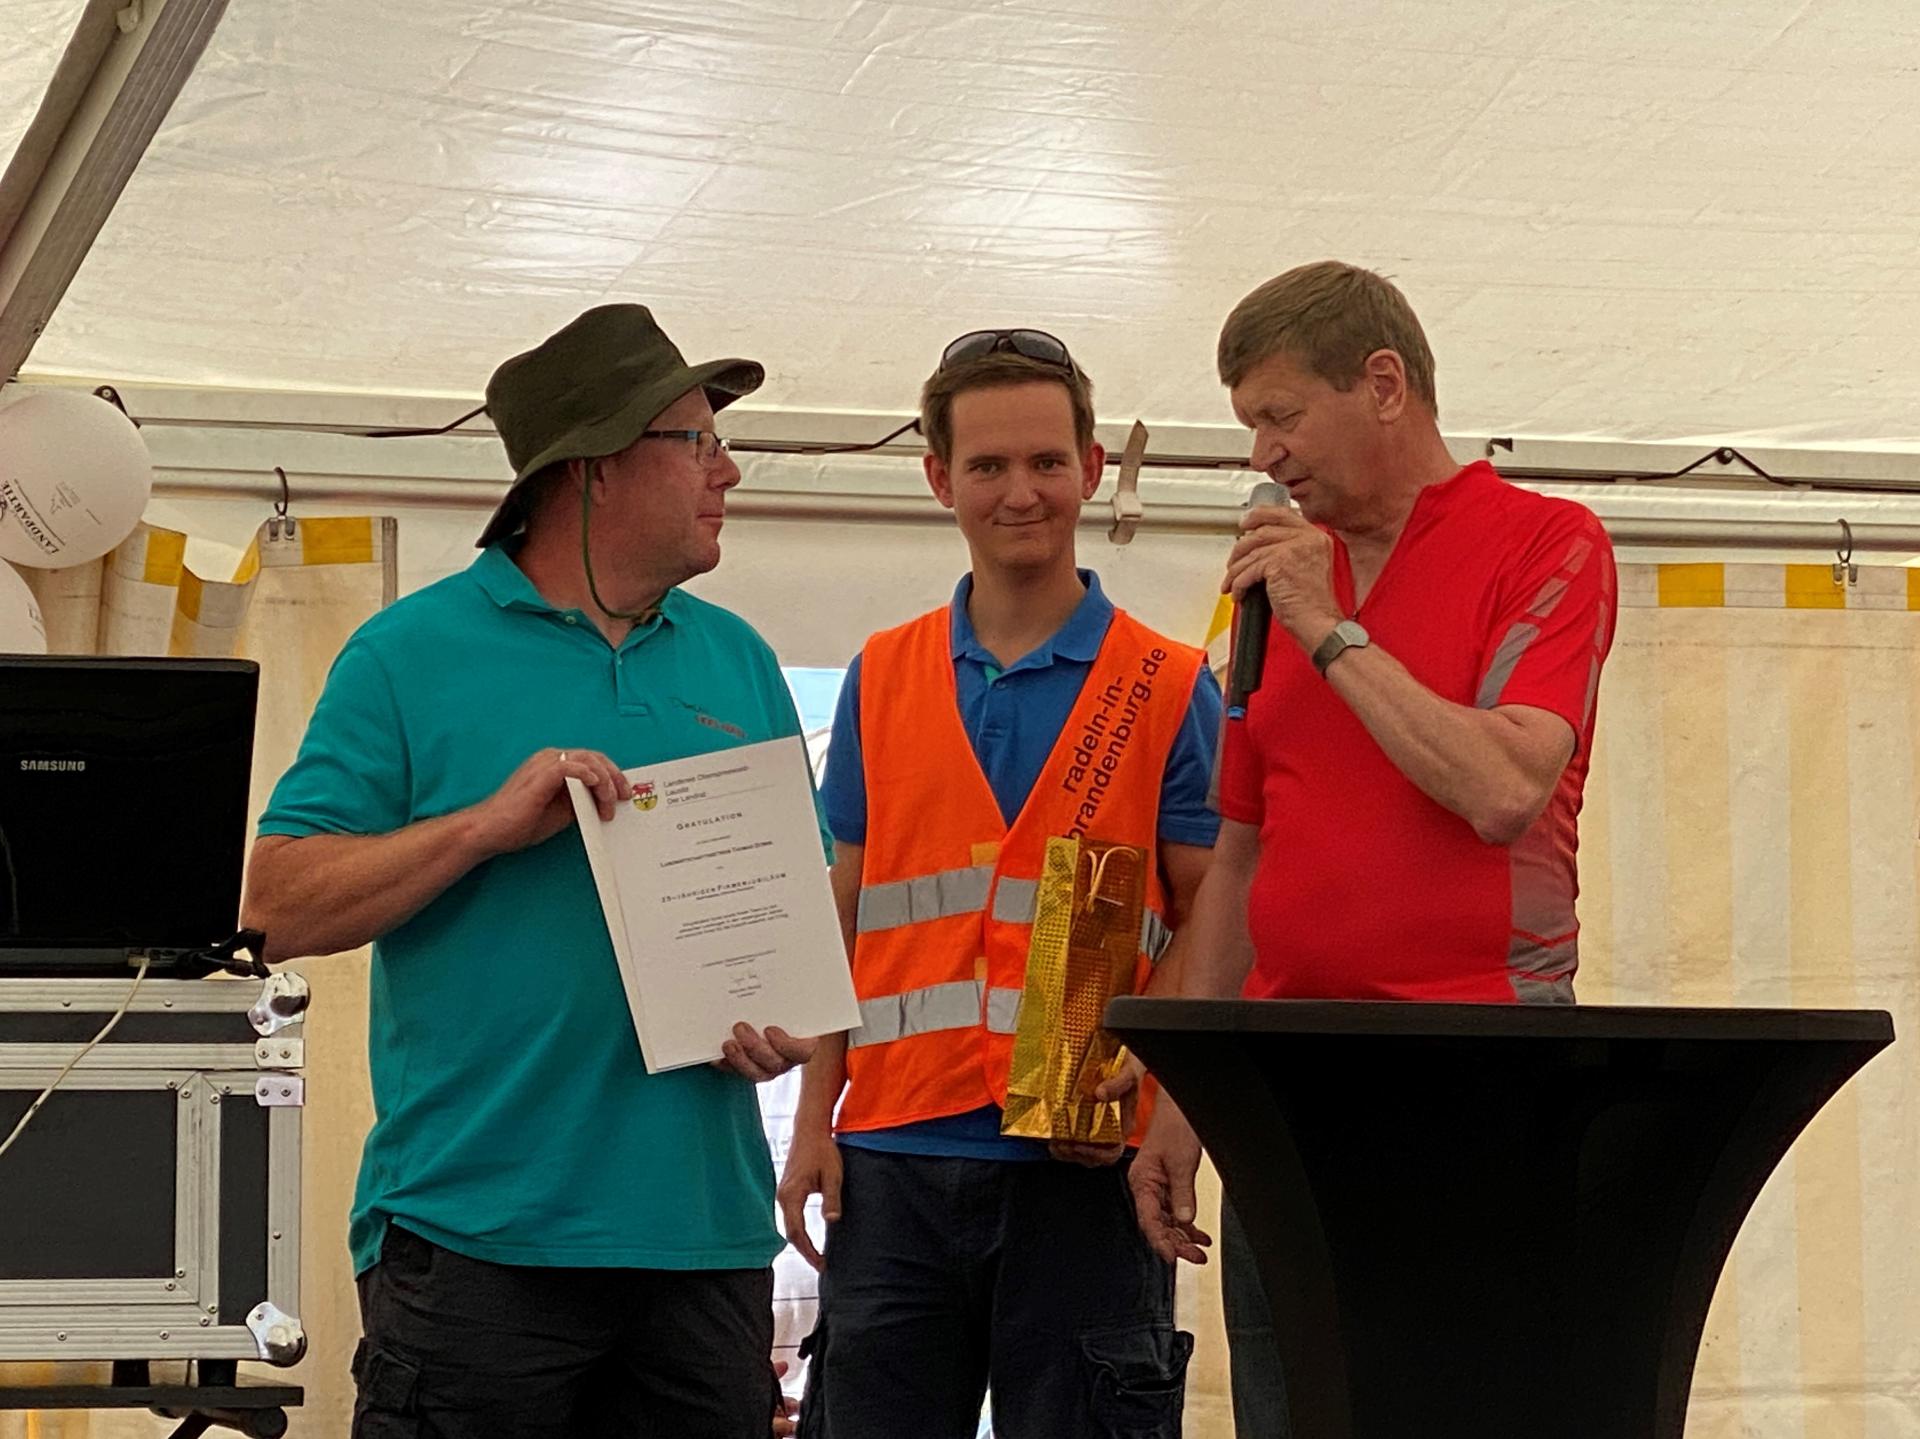 Auch Thomas Domin begrüßte die Teilnehmenden der Tour de OSL. Landrat Heinze beglückwünschte Ihn zum 25-jährigen Bestehen seines Betriebes. (Bild: Landkreis OSL/Nora Bielitz)